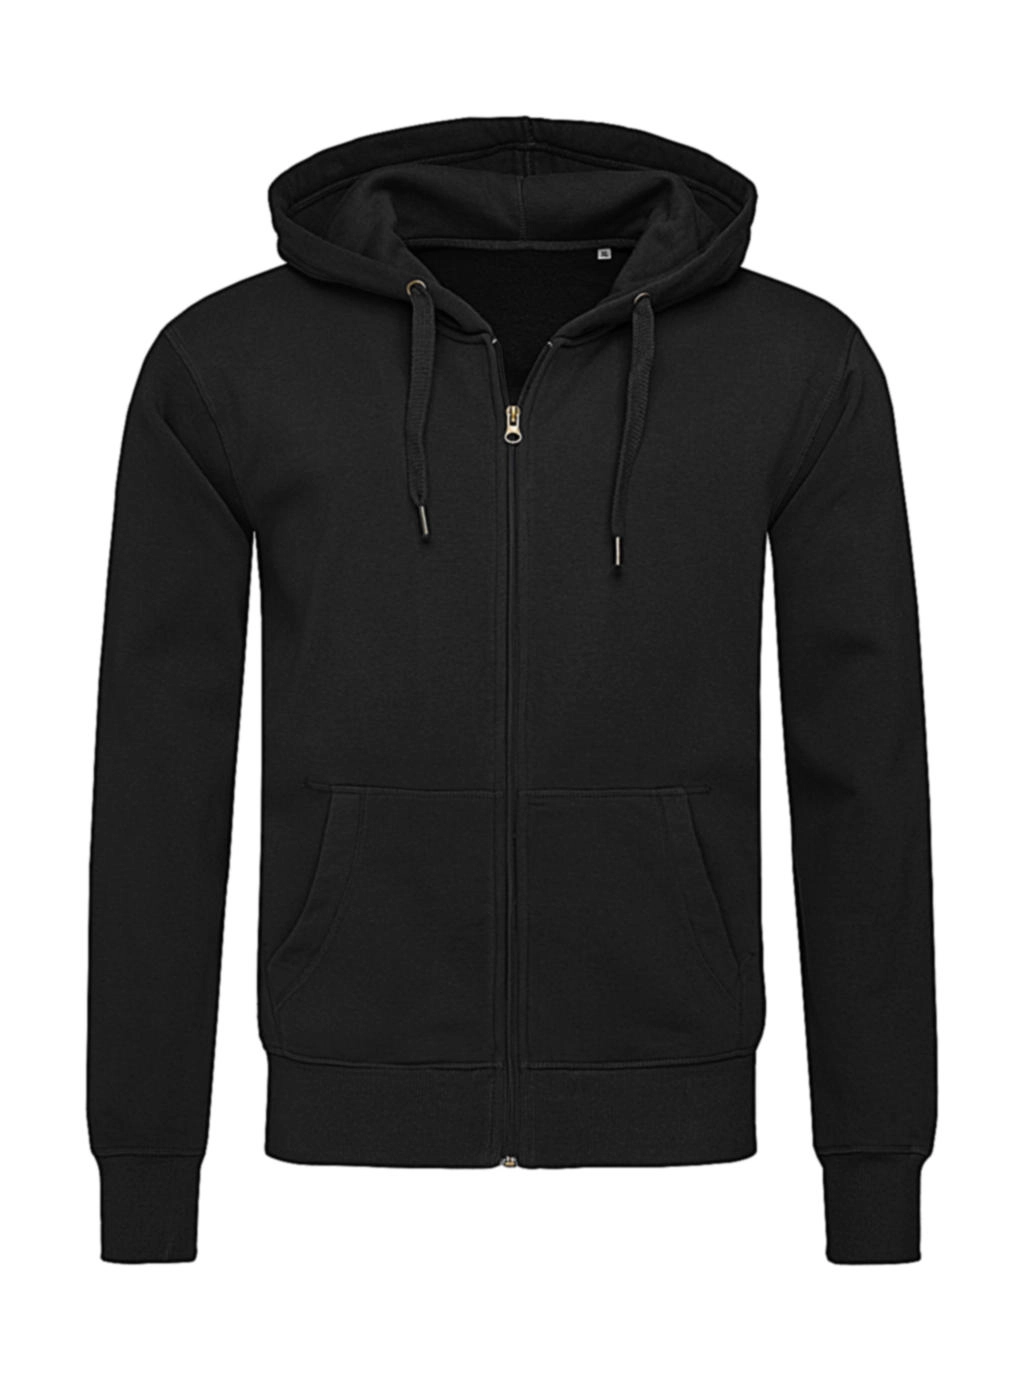 Sweat Jacket Select zum Besticken und Bedrucken in der Farbe Black Opal mit Ihren Logo, Schriftzug oder Motiv.